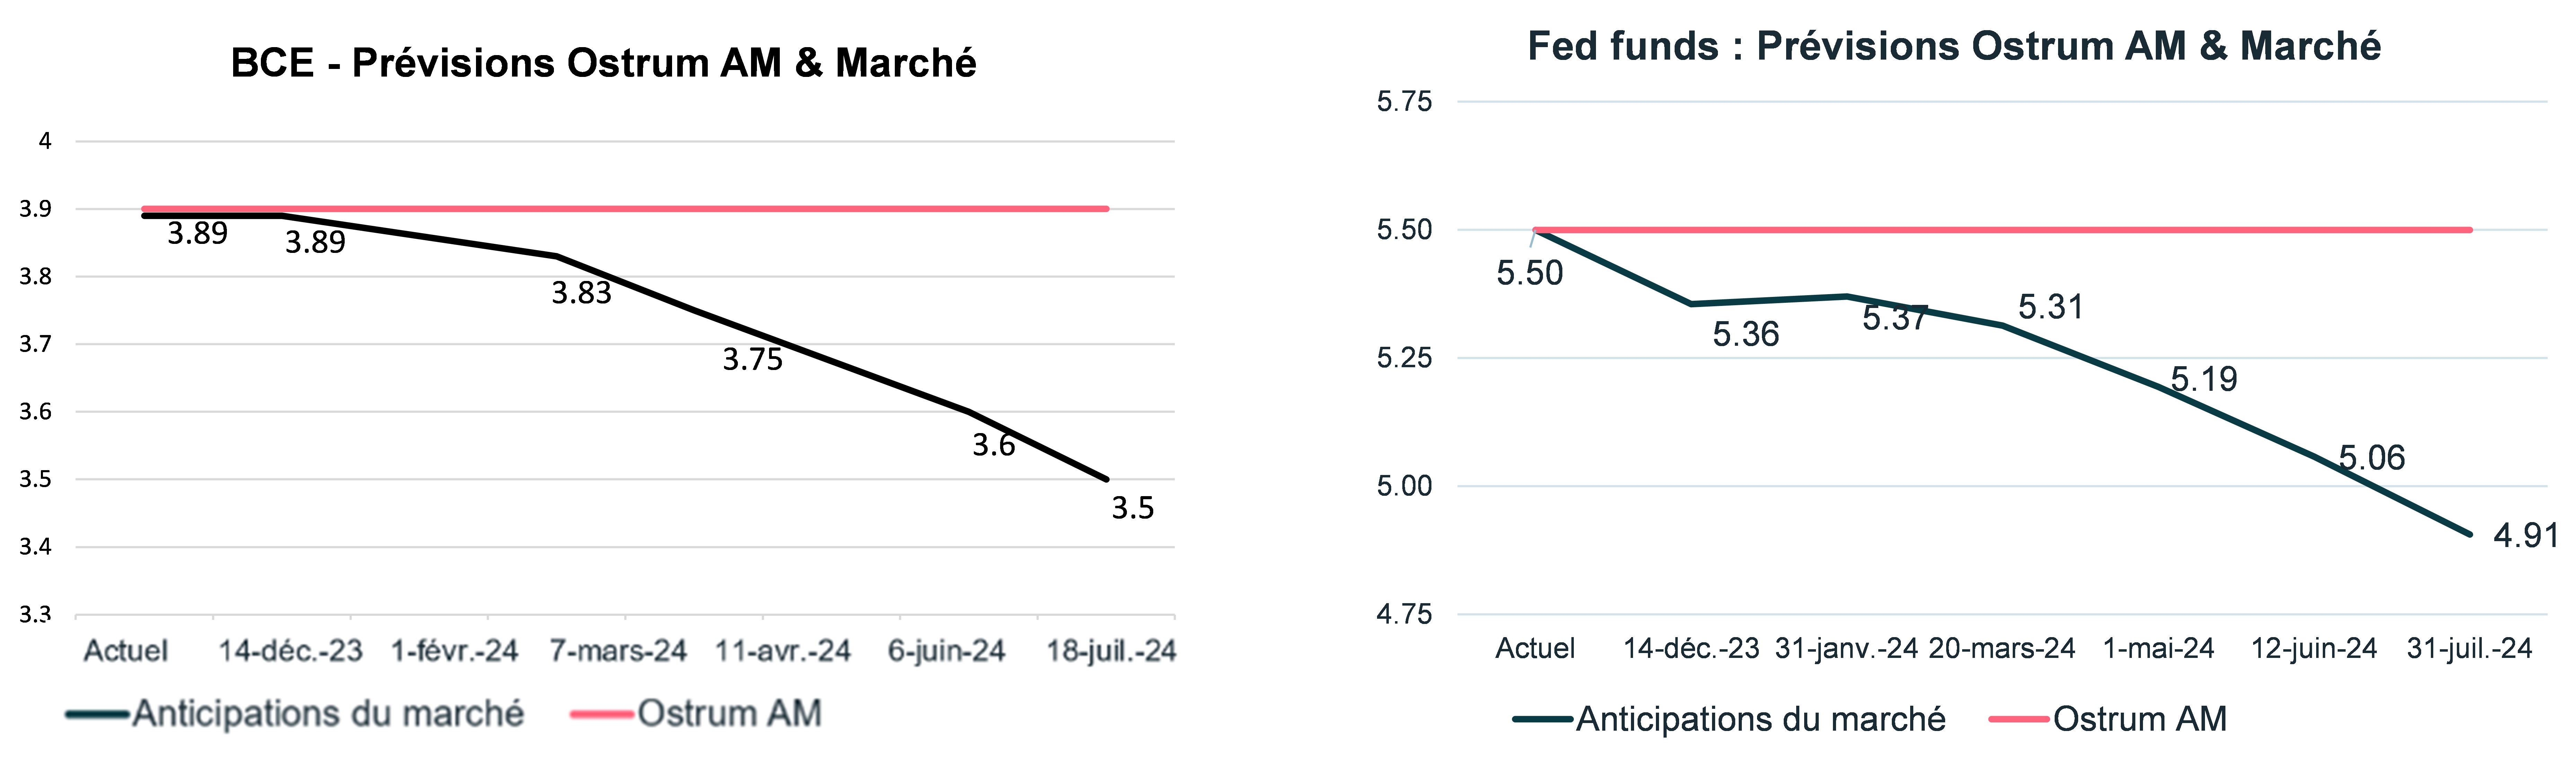 bce-fed-funds-previsions-ostrum-am-et-marche